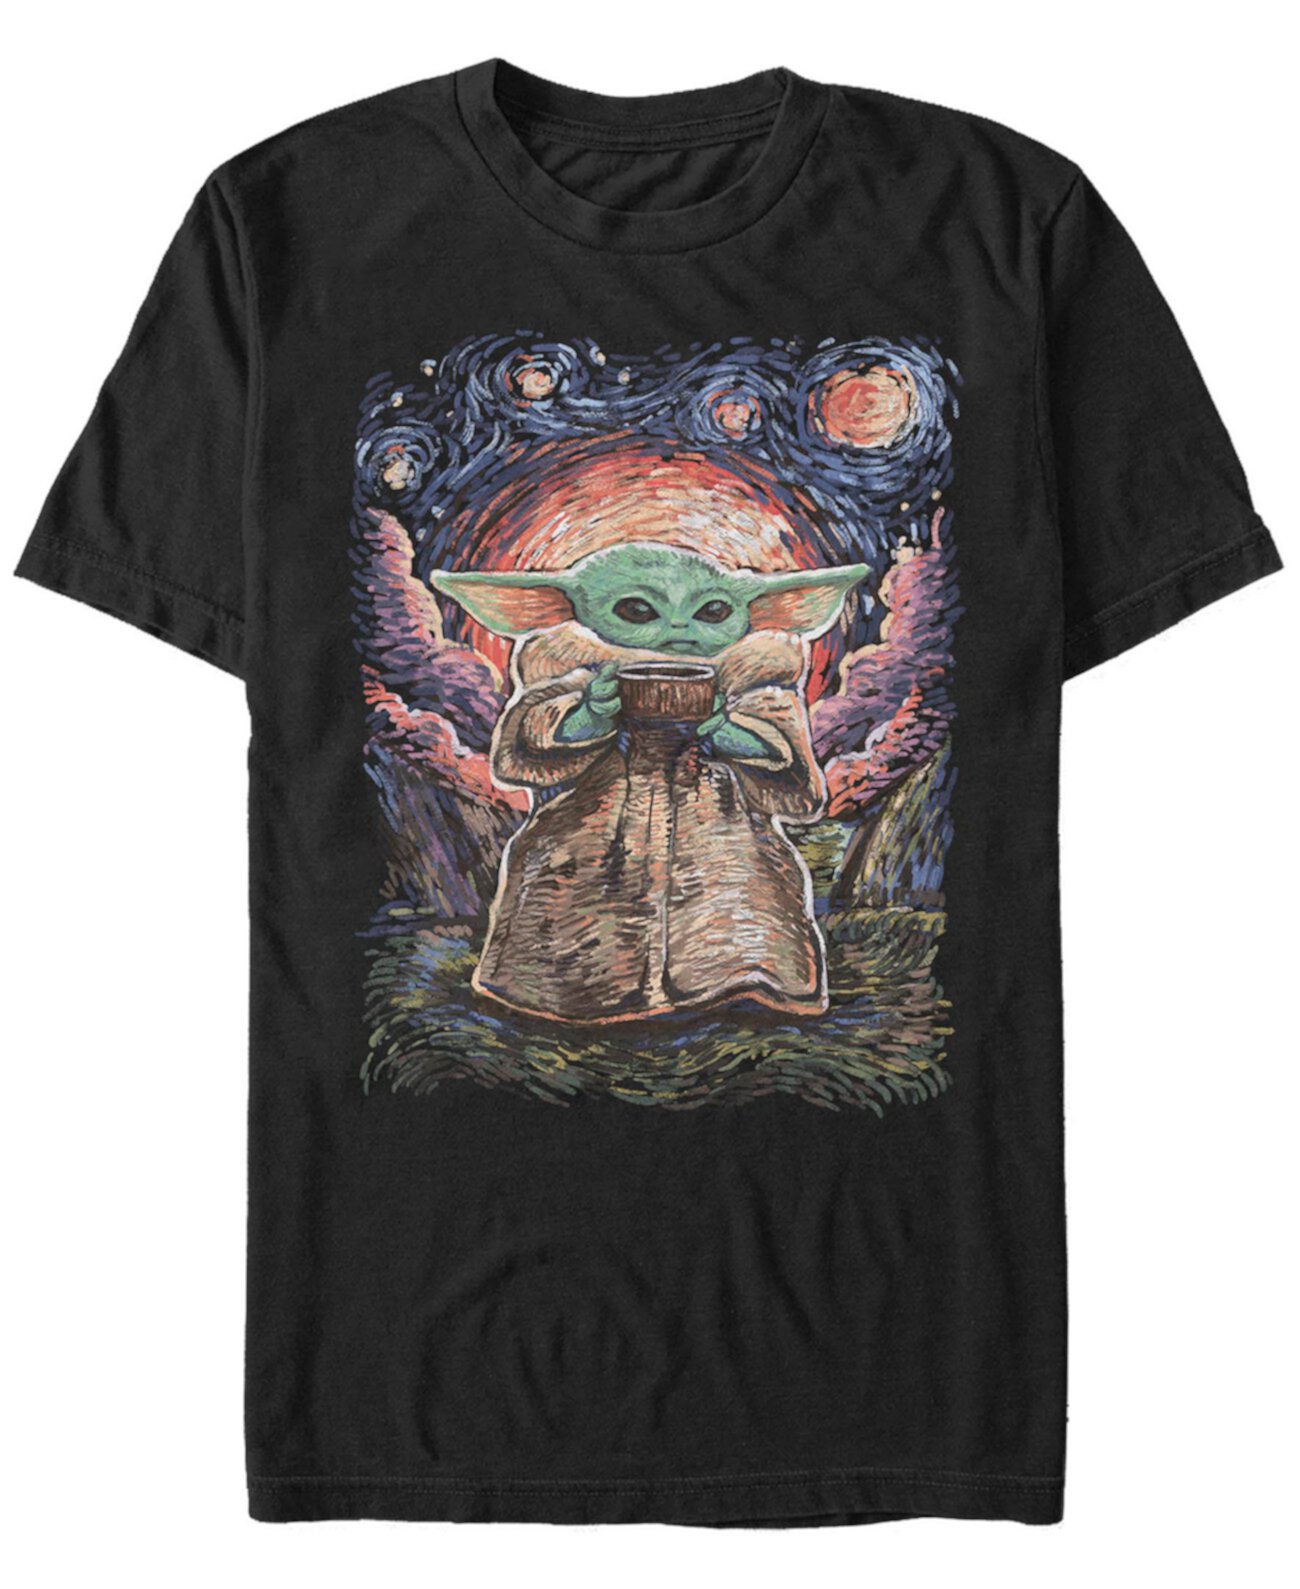 Мужская футболка с короткими рукавами Star Wars Mandalorian Sipping Starries FIFTH SUN